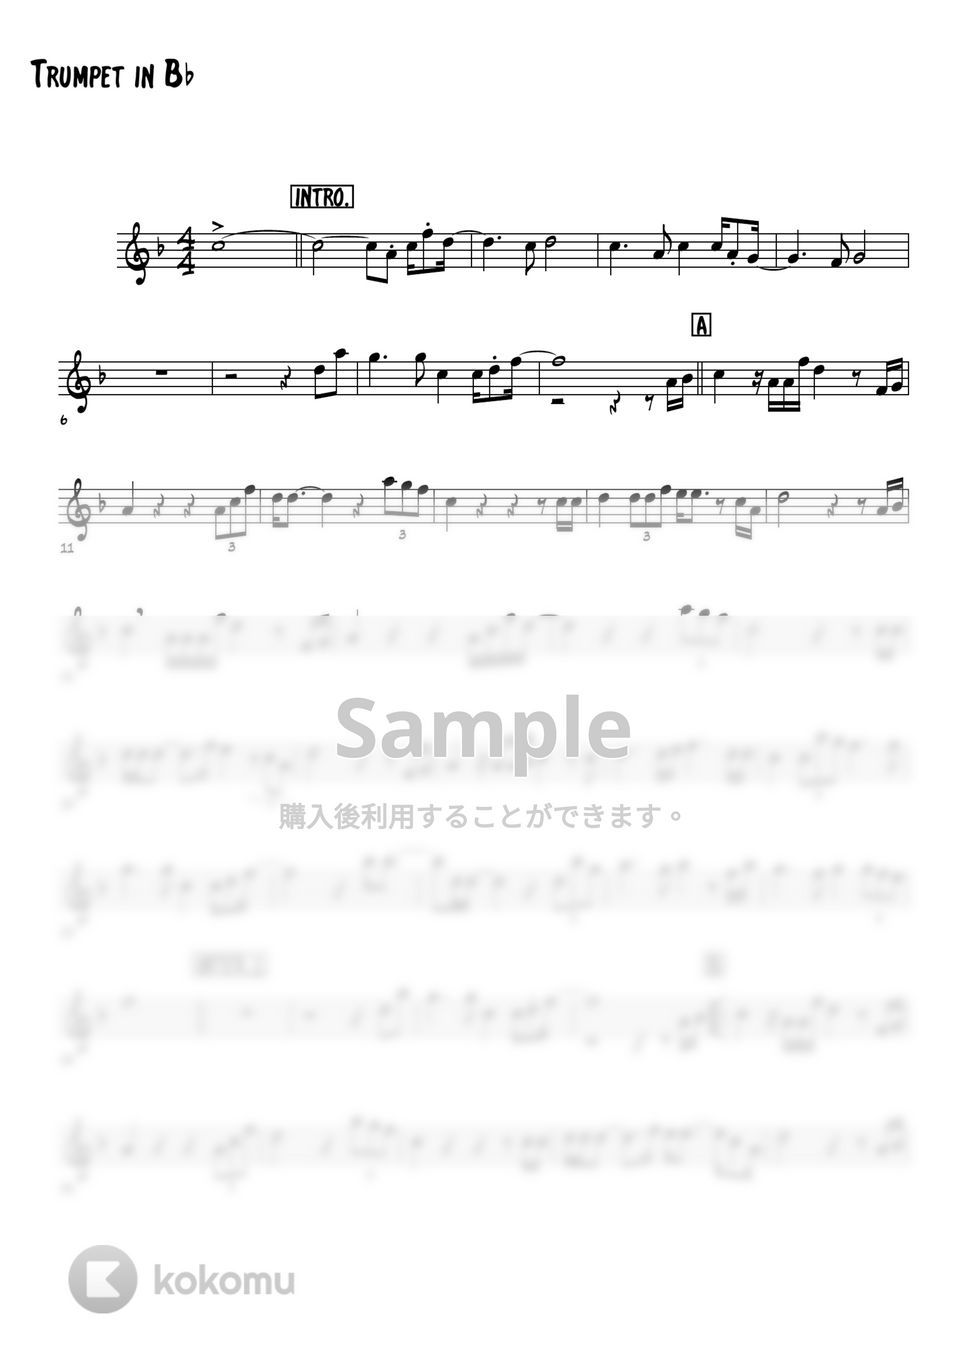 森進一（吉田拓郎） - 襟裳岬 (トランペットメロディー楽譜) by 高田将利